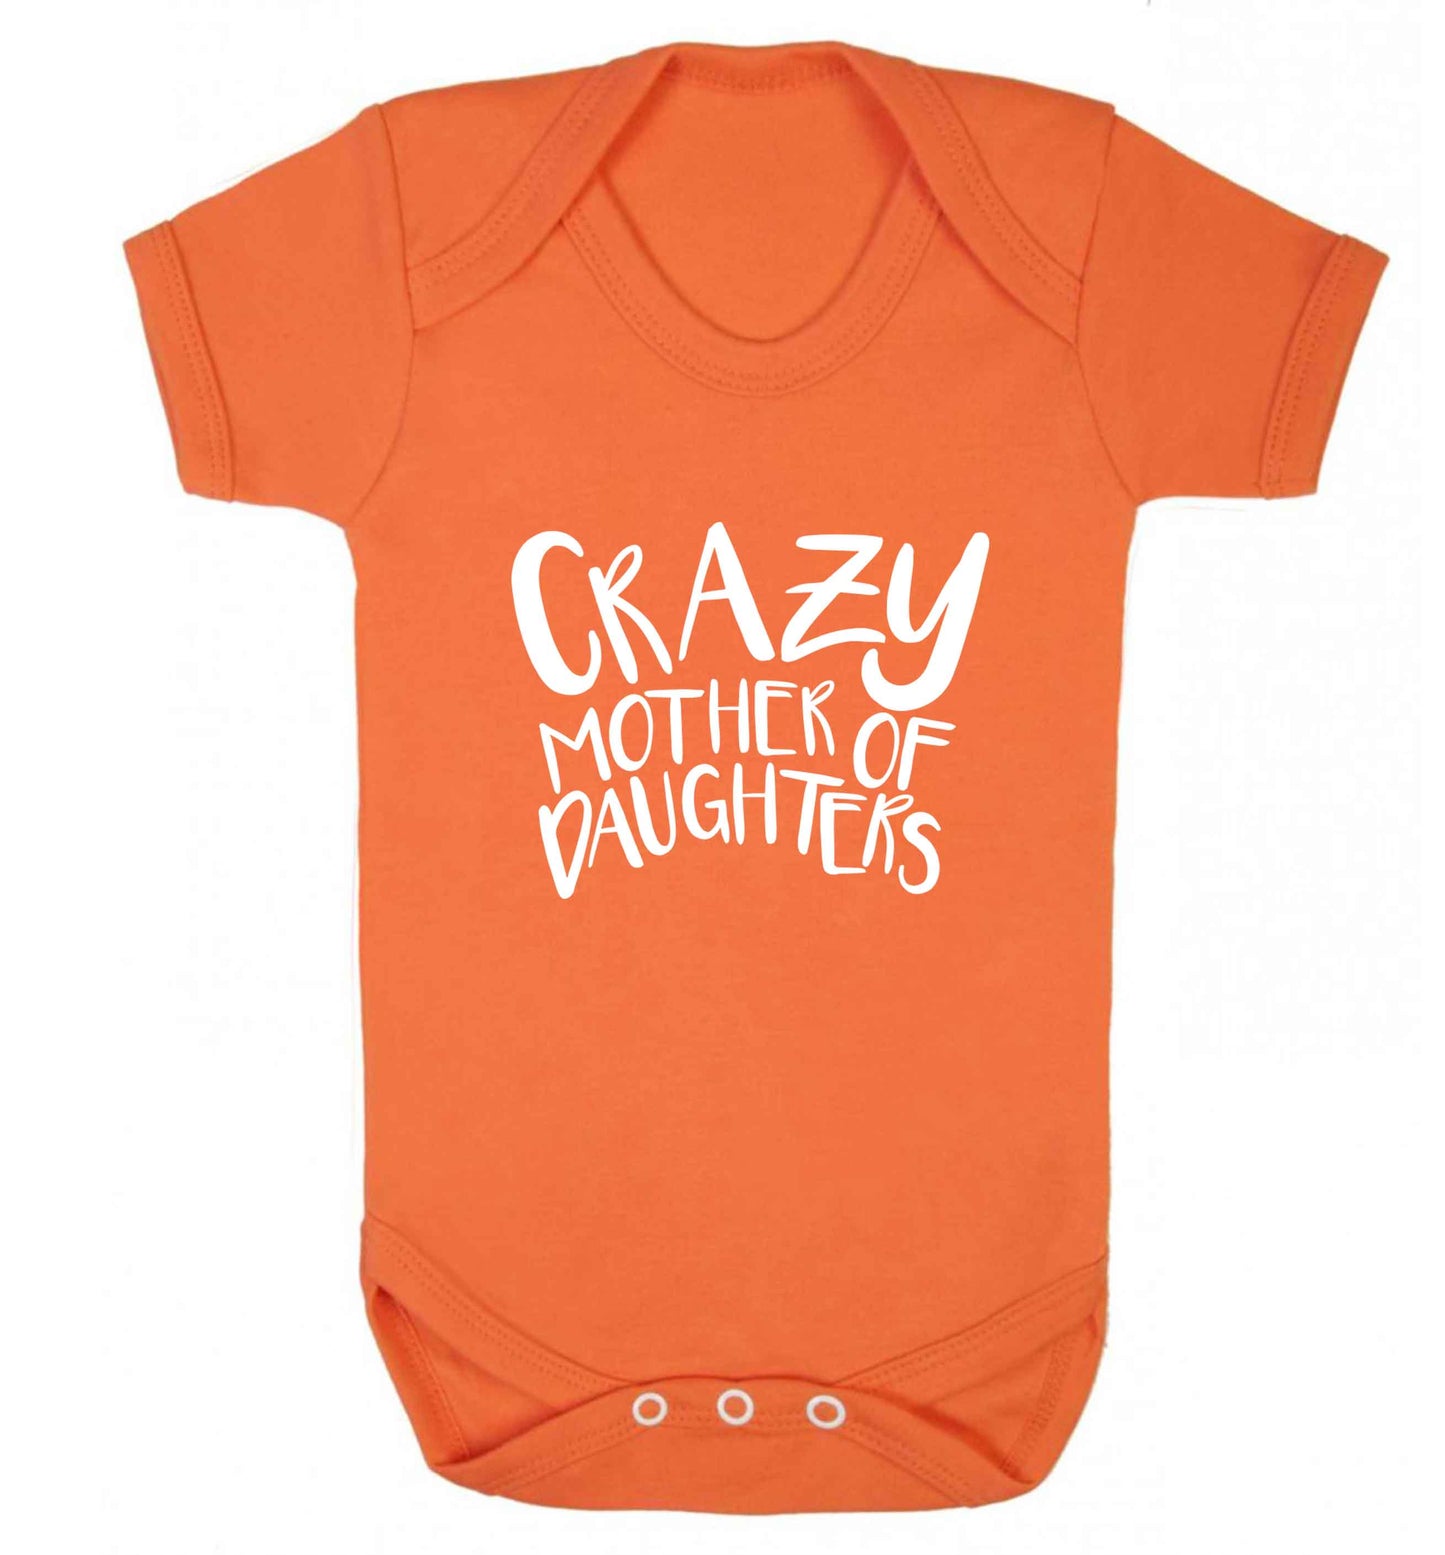 Crazy mother of daughters baby vest orange 18-24 months